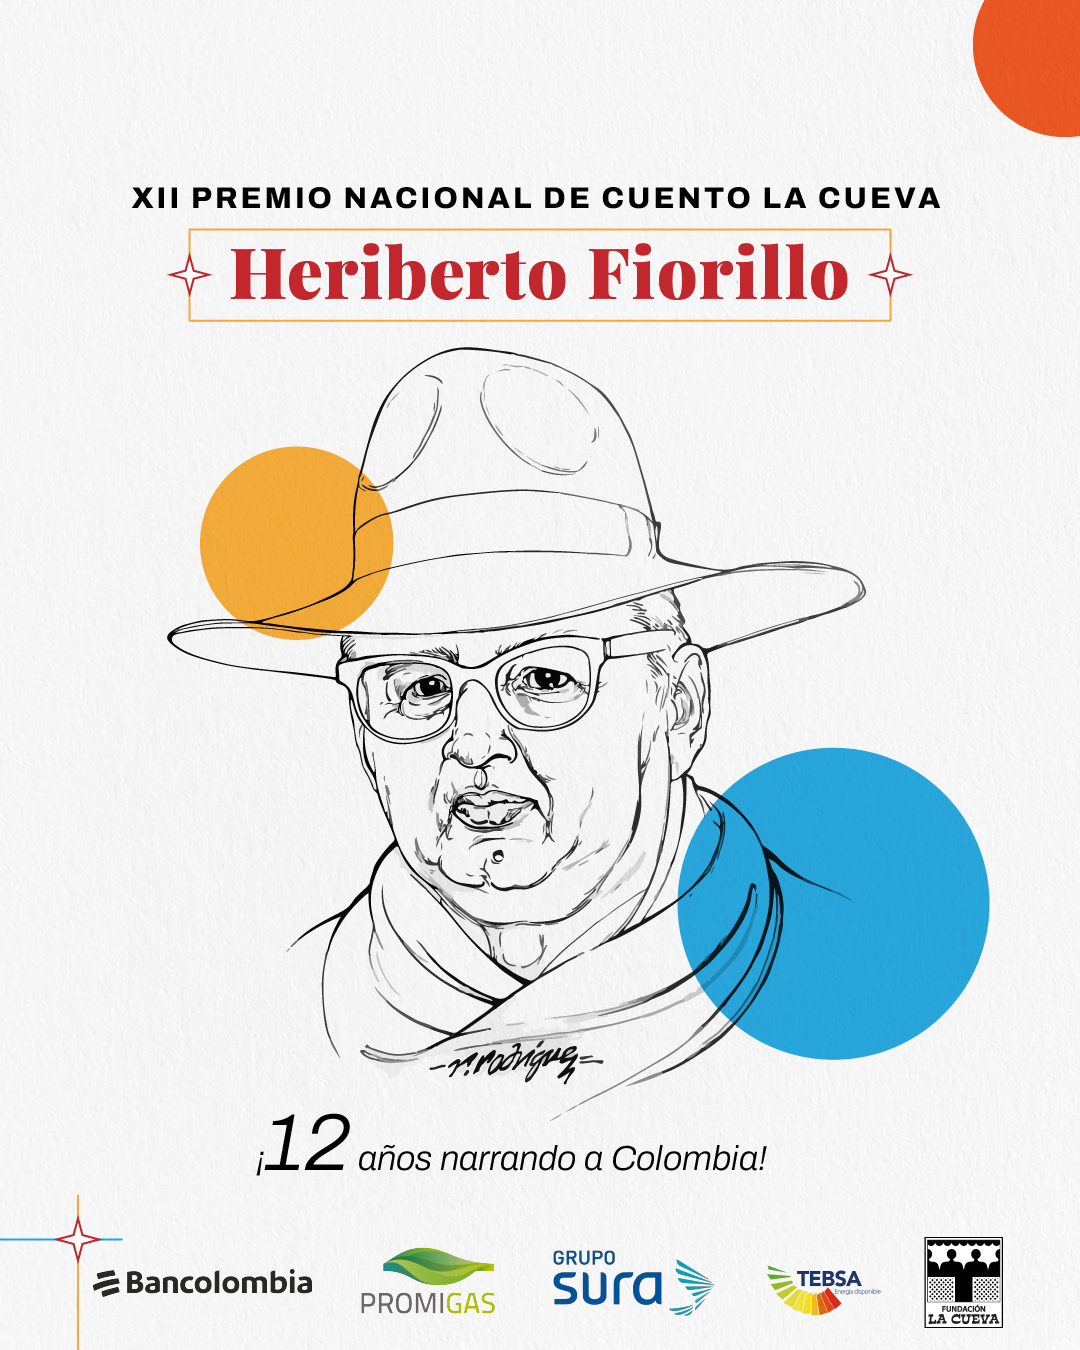 𝗫𝗜𝗜 𝗱𝗲𝗹 𝗣𝗿𝗲𝗺𝗶𝗼 𝗡𝗮𝗰𝗶𝗼𝗻𝗮𝗹 𝗱𝗲 𝗖𝘂𝗲𝗻𝘁𝗼 𝗟𝗮 𝗖𝘂𝗲𝘃𝗮, este año será dedicado a la memoria de su fundador Heriberto Fiorillo